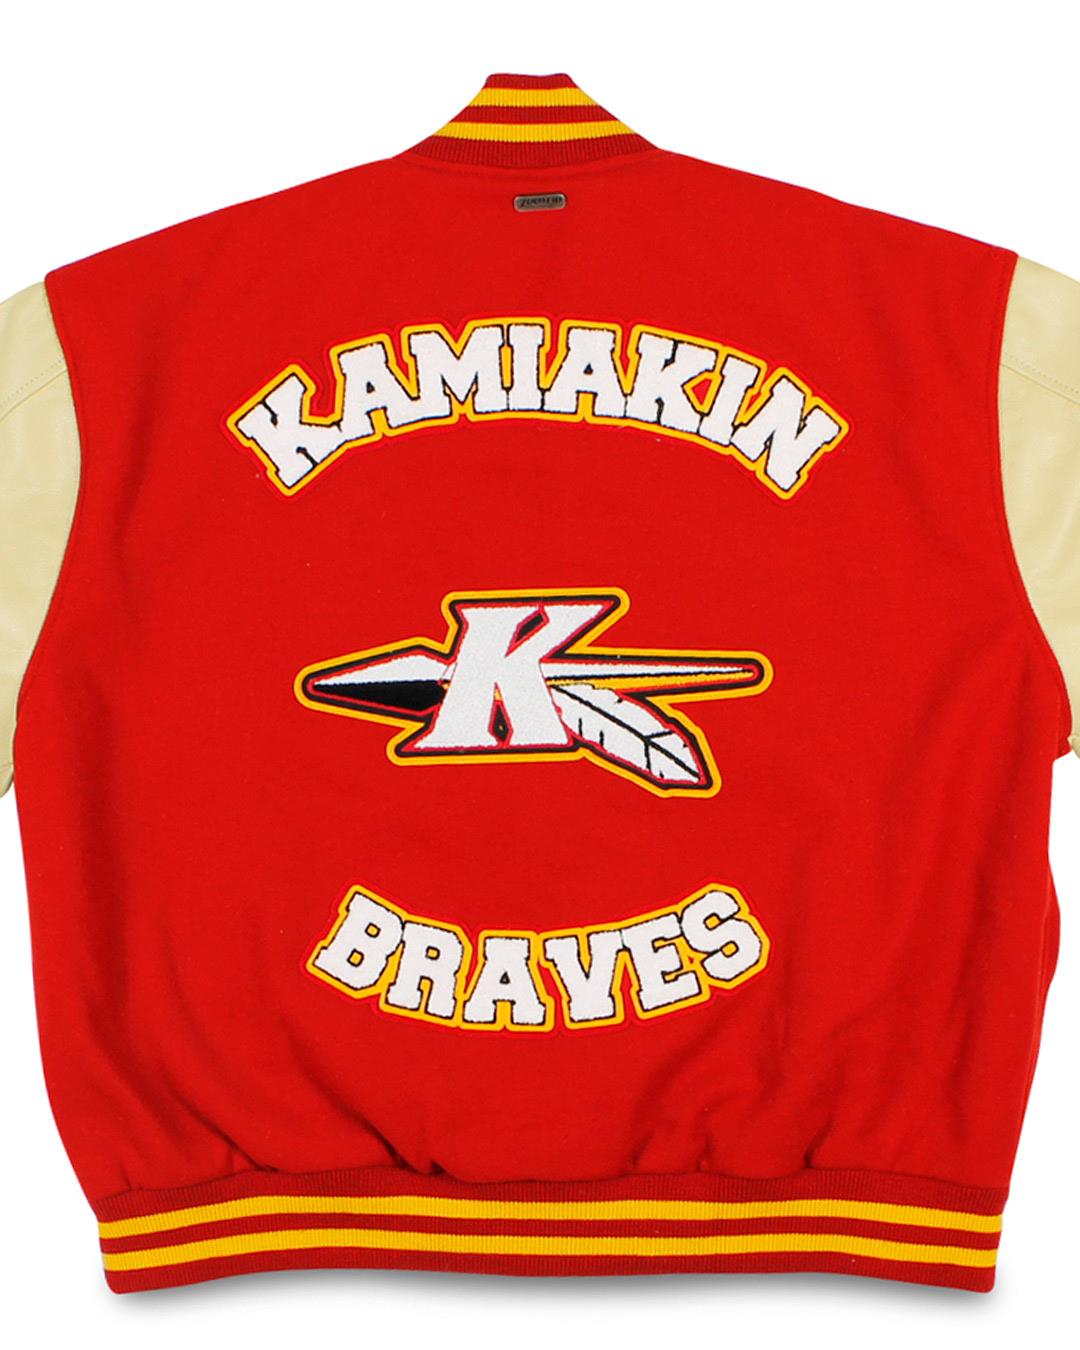 Kamiakin High School Letterman Jacket, Kennewick WA - Back